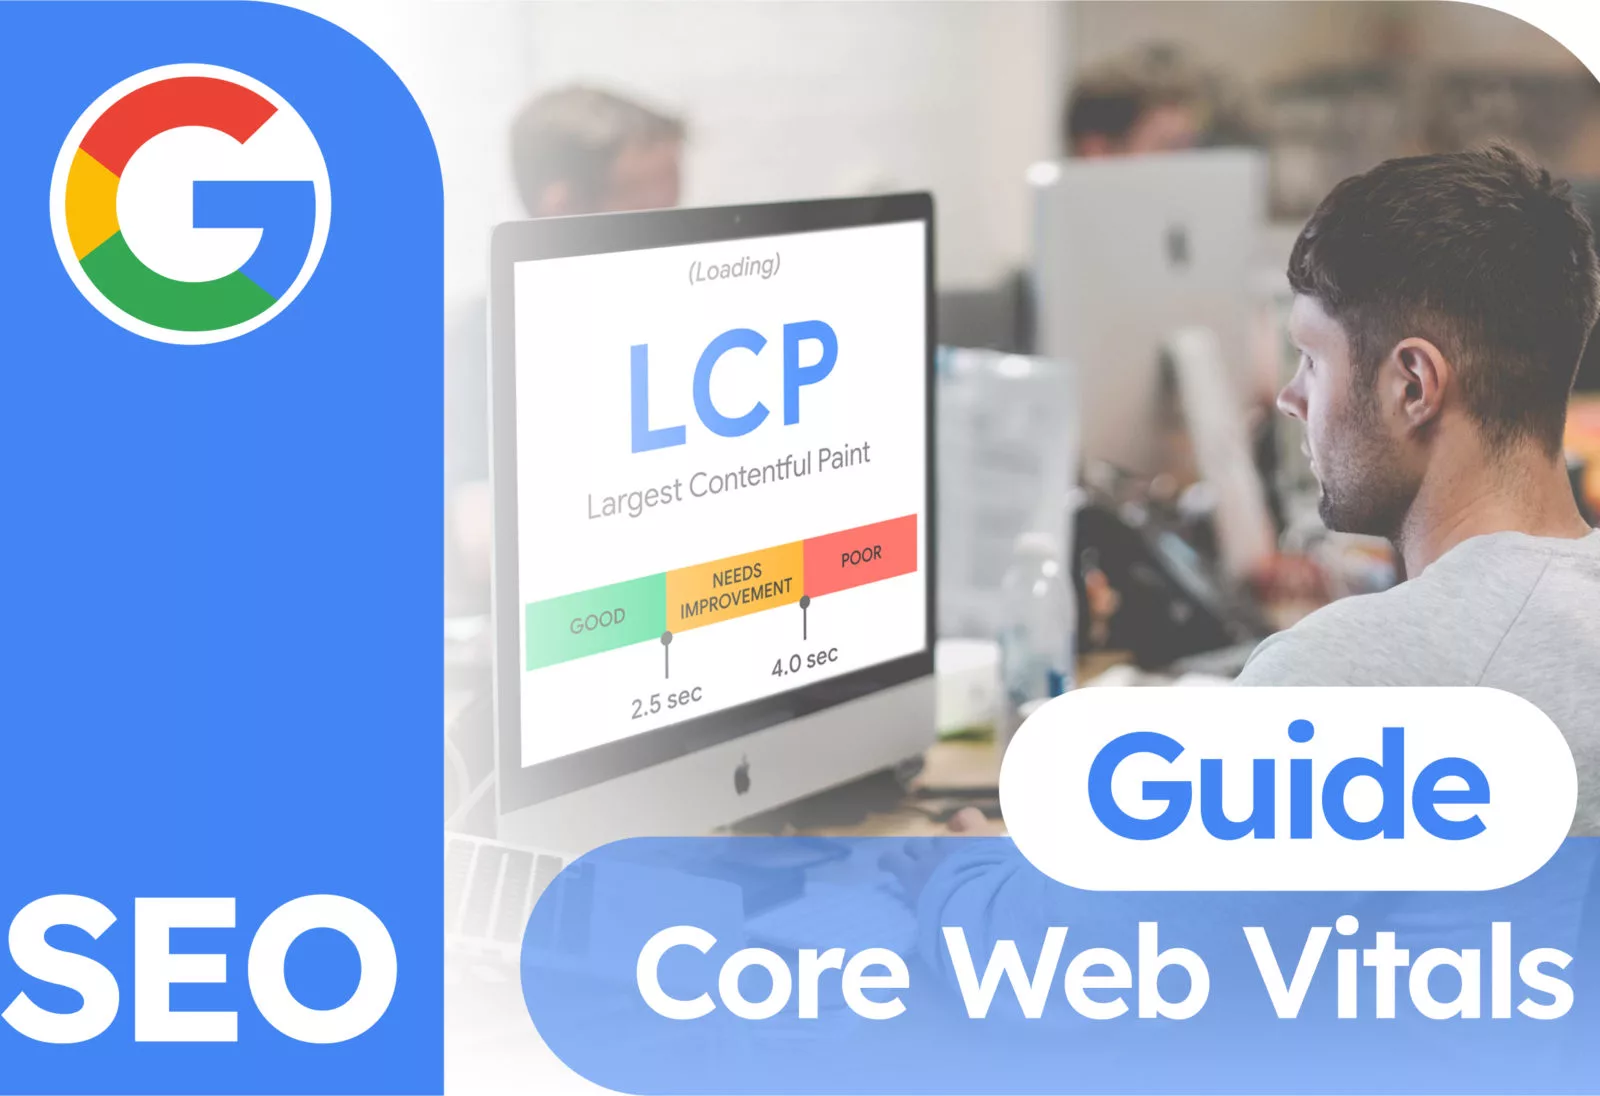 Guía de Core Web Vitals